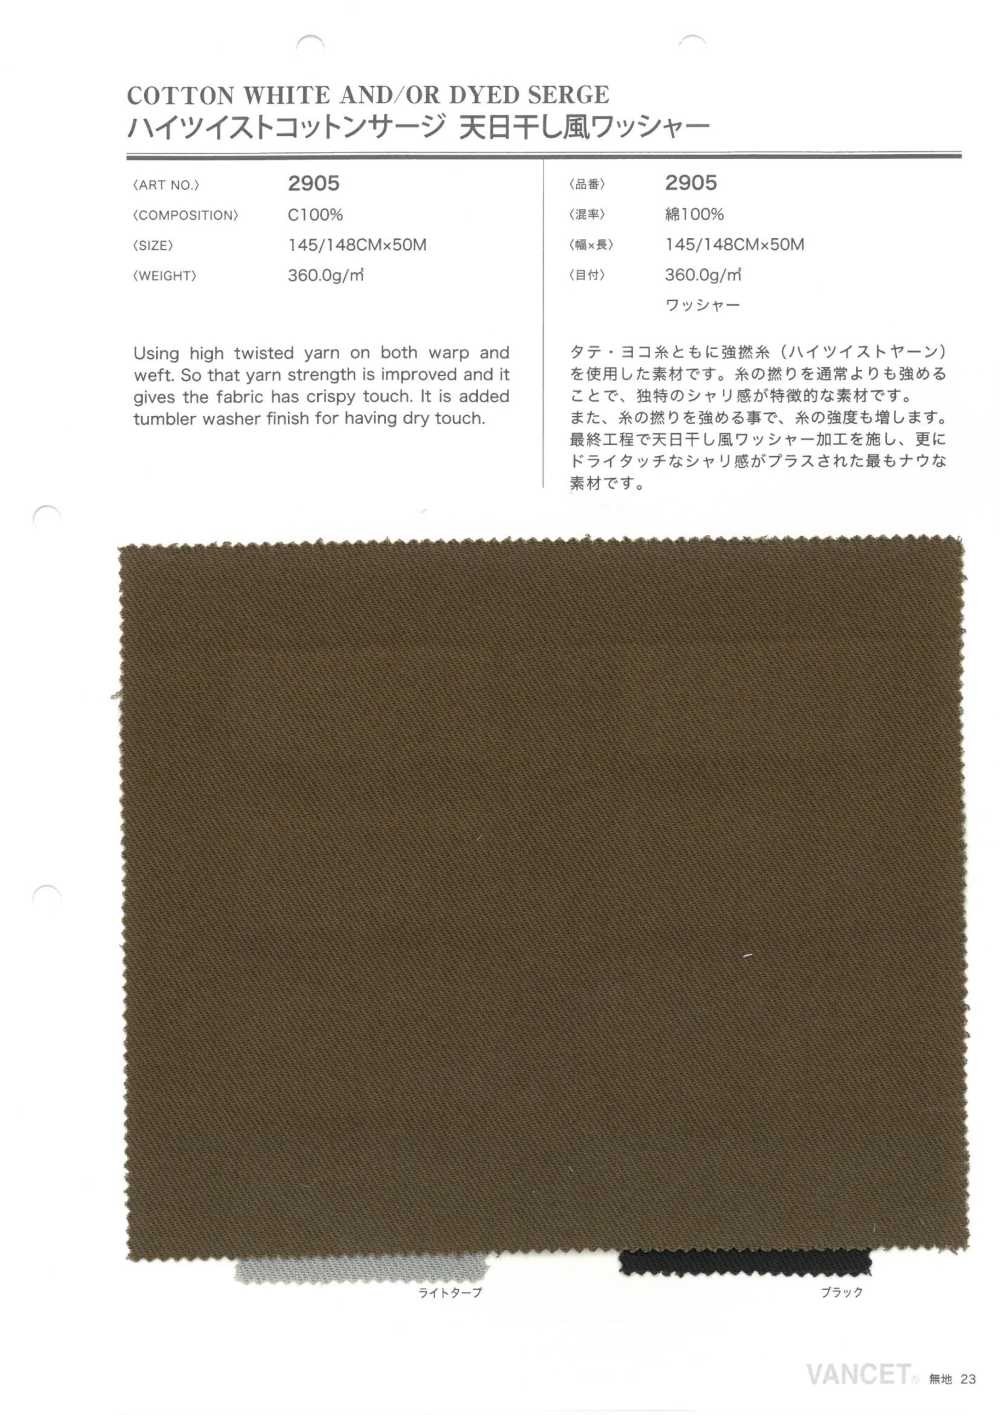 2905 Processamento De Lavadora Seca Ao Sol De Sarja De Algodão Torcido Alto[Têxtil / Tecido] VANCET